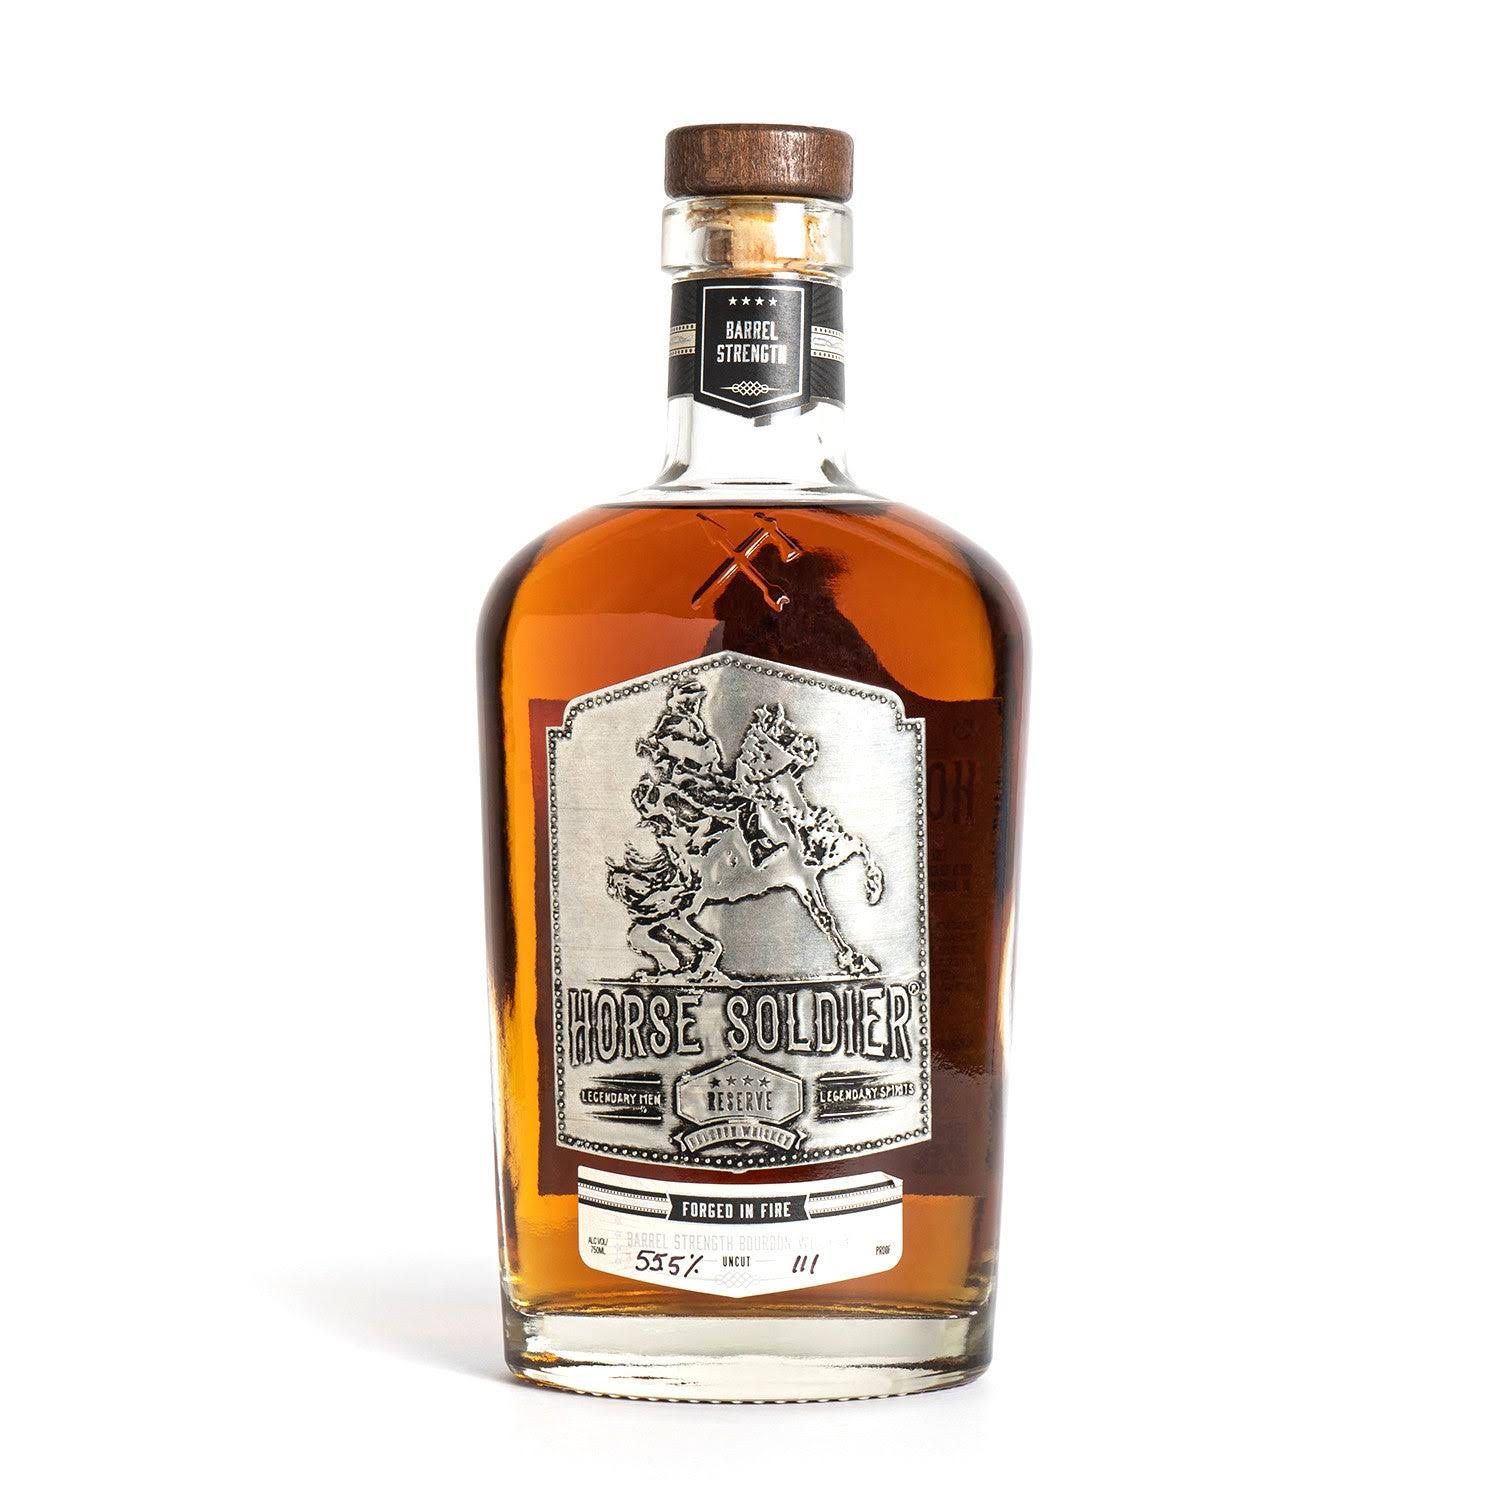 Horse Soldier Barrel Strength Bourbon Whiskey 750ml Bottle